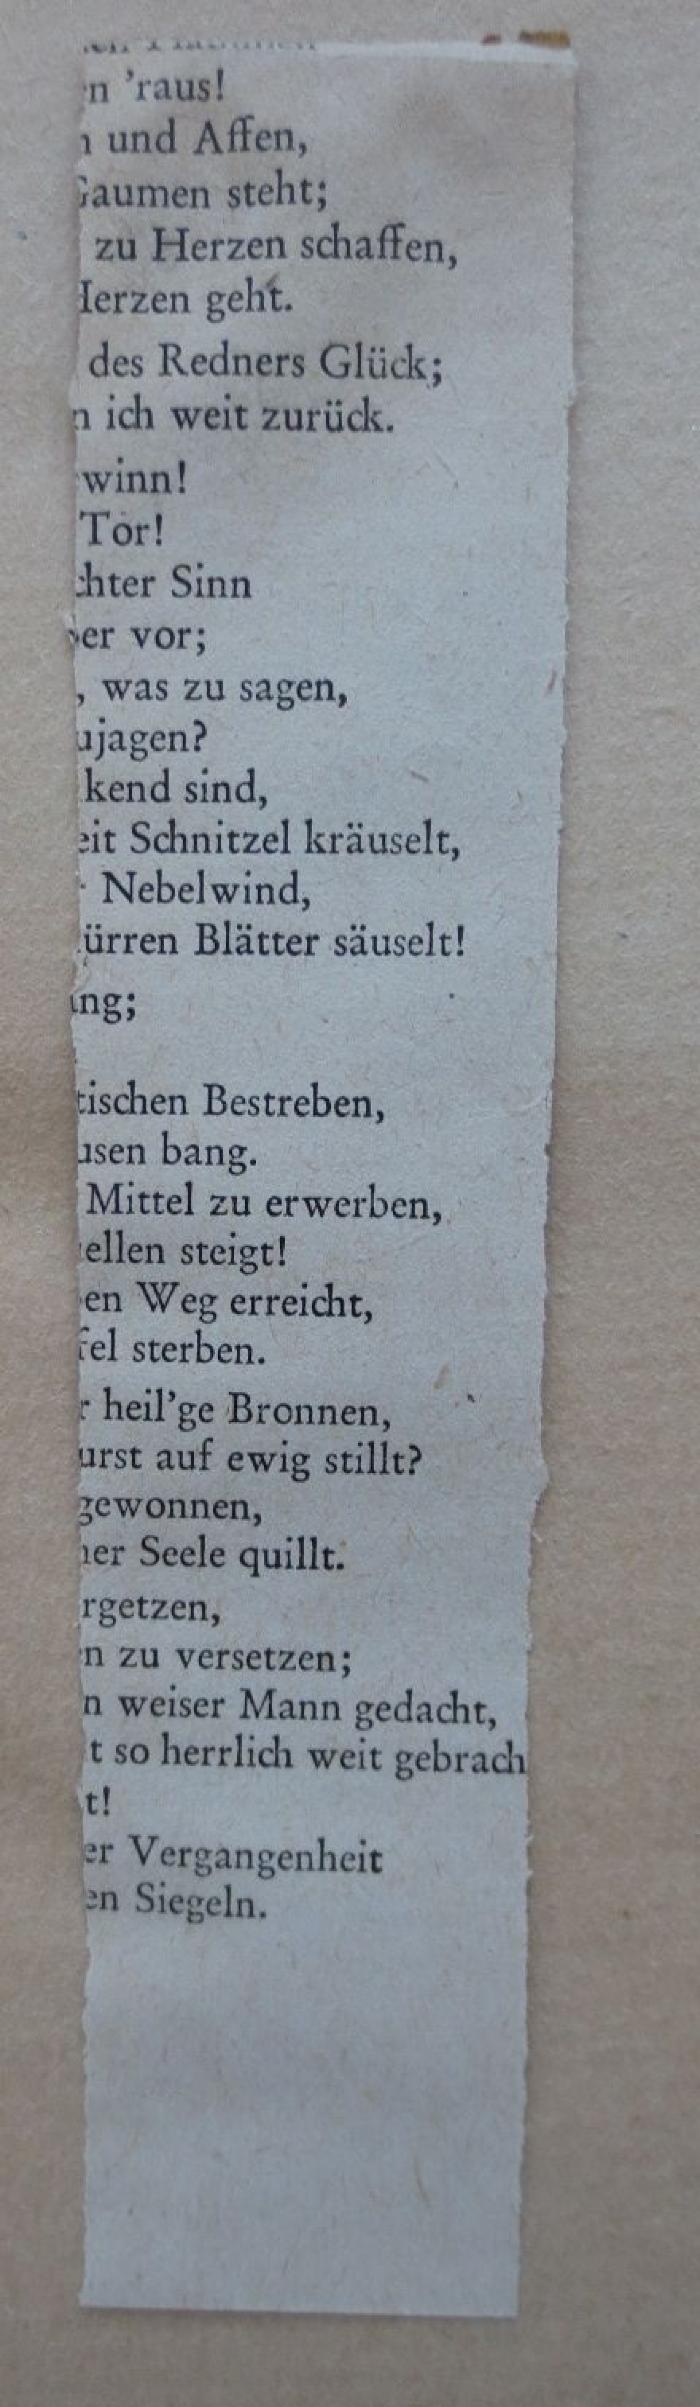  Jahrbuch der Jüdisch-Literarischen Gesellschaft. 1926 5686. (1926);- (Kahn, Moses), Papier: Lesezeichen; '[...]n 'raus!
[...] und Affen
[...] Gaumen steht
[...]'. 